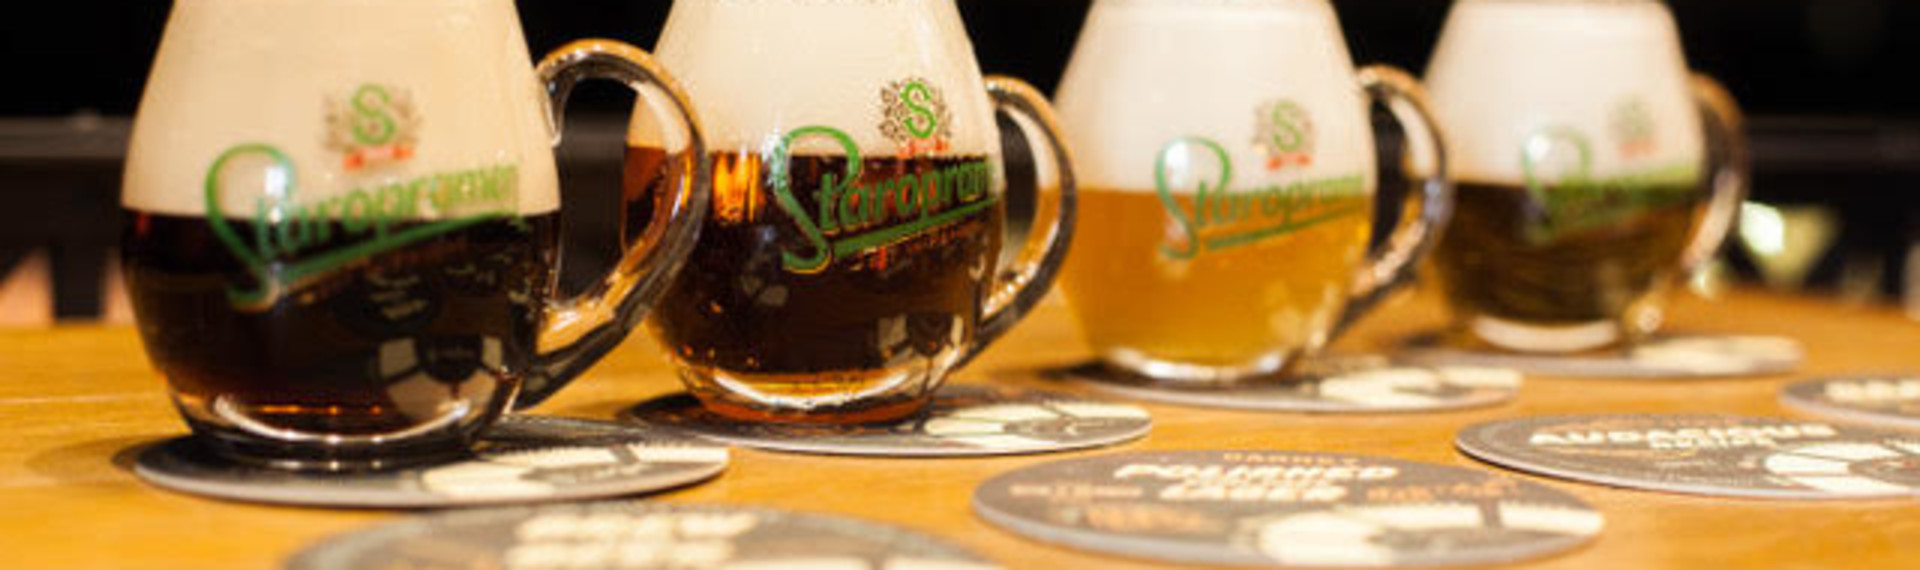 Bryggeri-tur med øl - Smag tjekkisk øl, når den er allerbedst